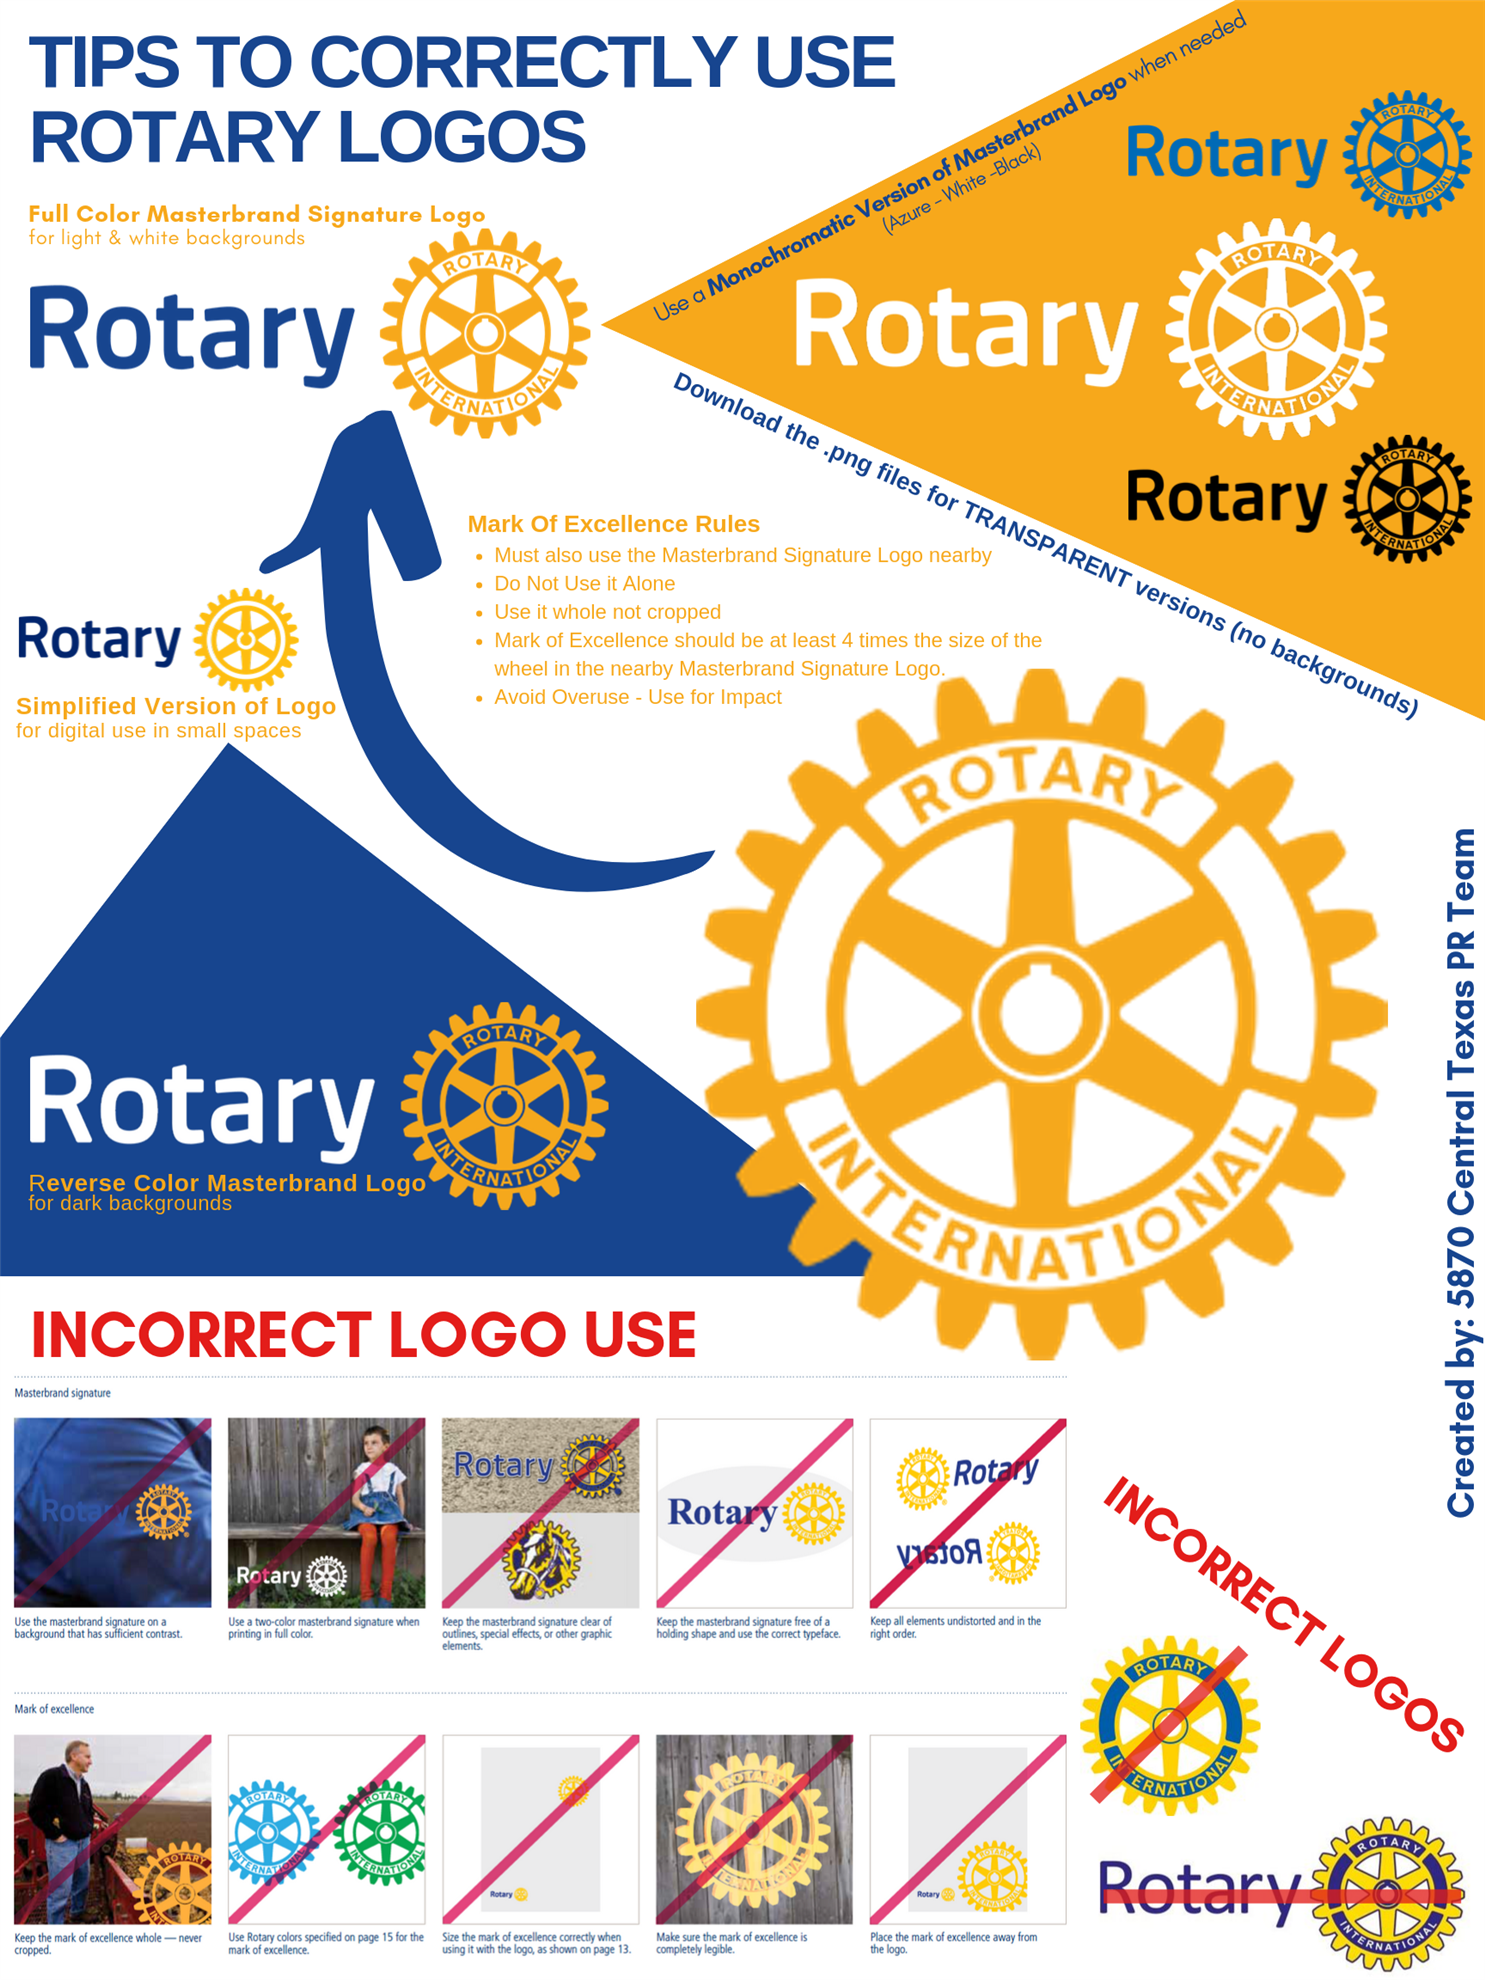 Rotary History – Rotary Club of New Market, MD